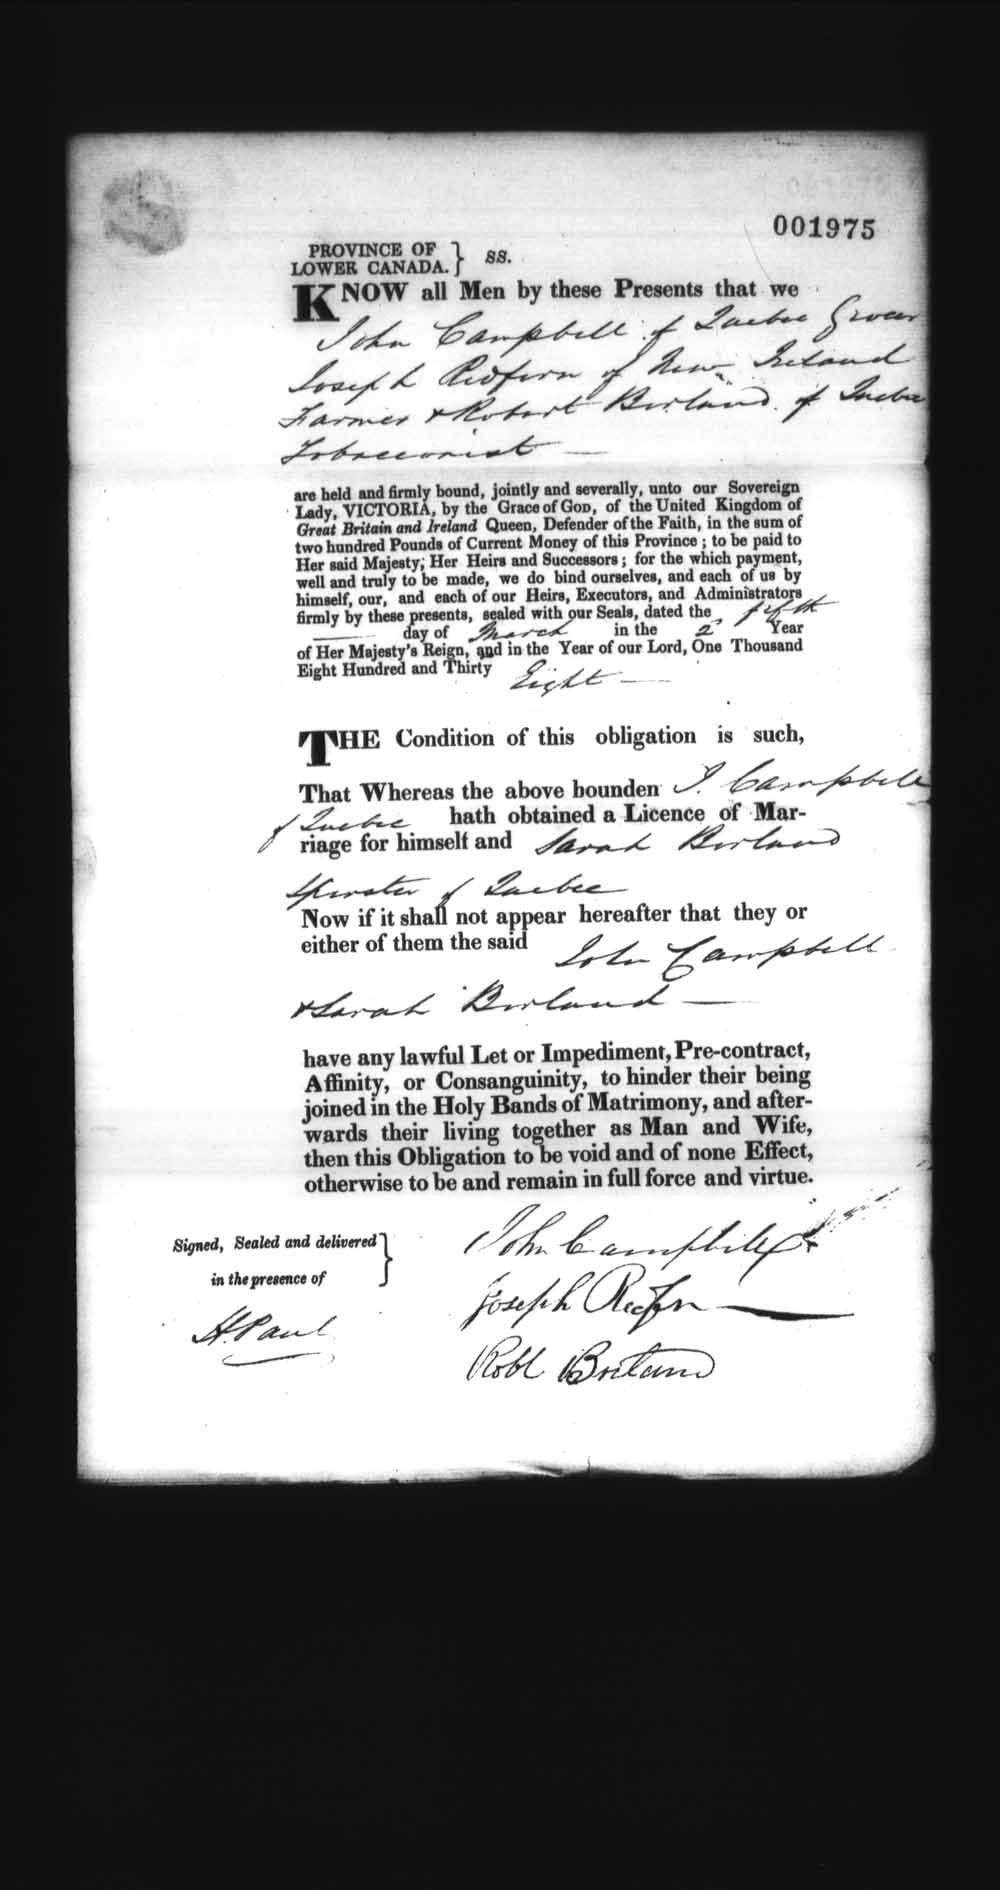 Page numérisé de Cautionnements de mariages pour le Haut-Canada et le Bas-Canada (1779-1865) pour l'image numéro: e008238316